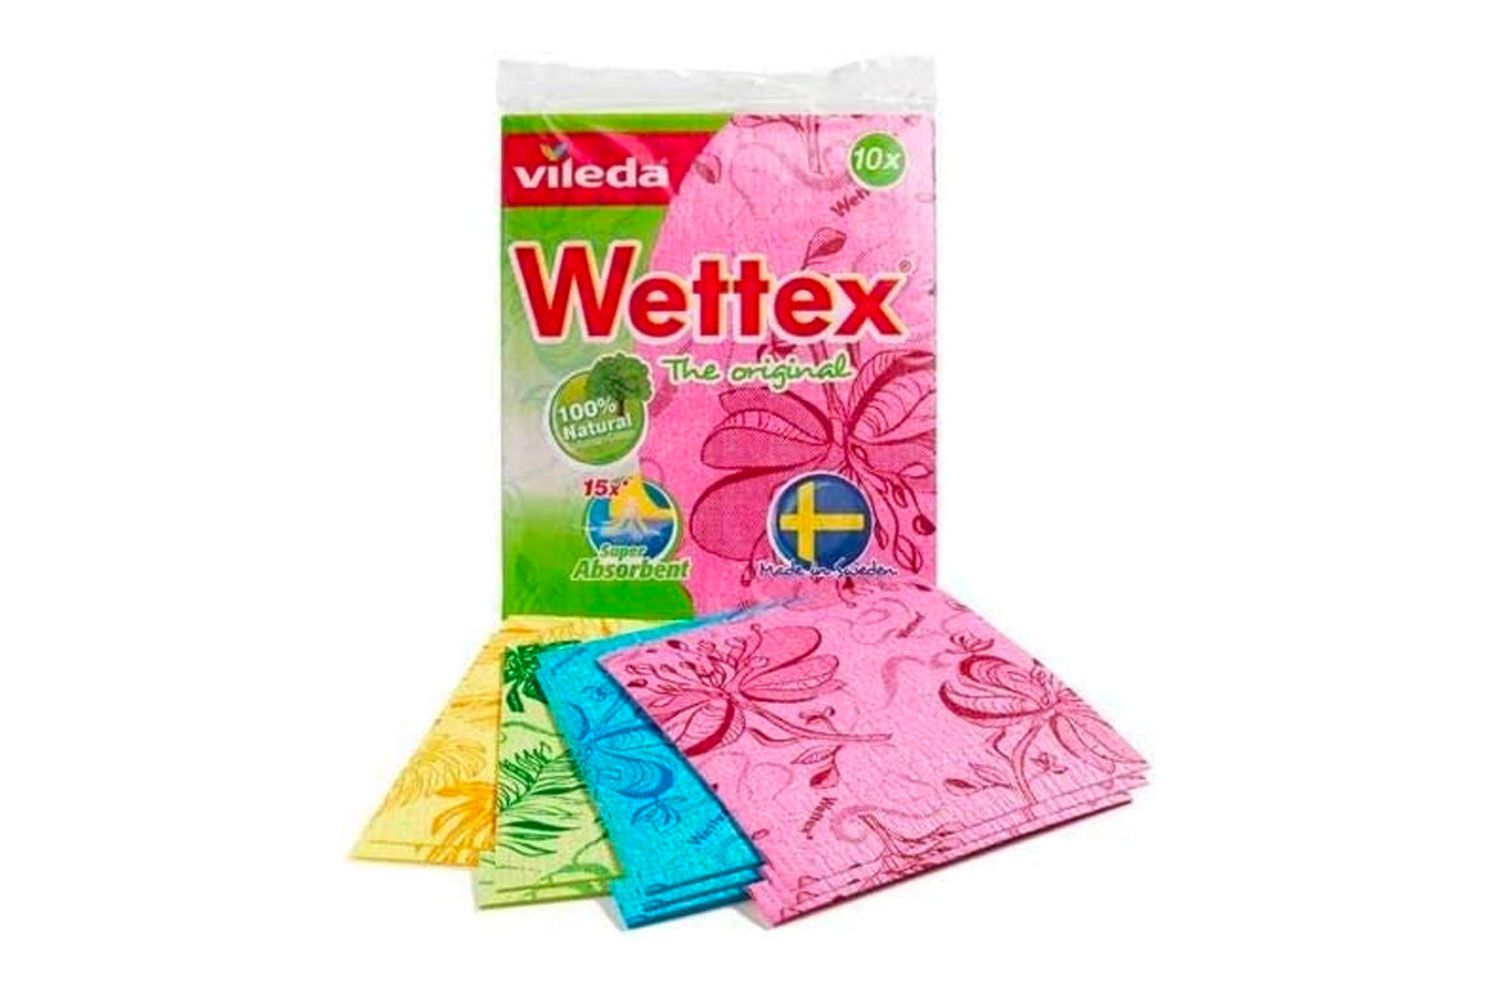 瑞典高吸水性树脂抹布Wettex原来是3